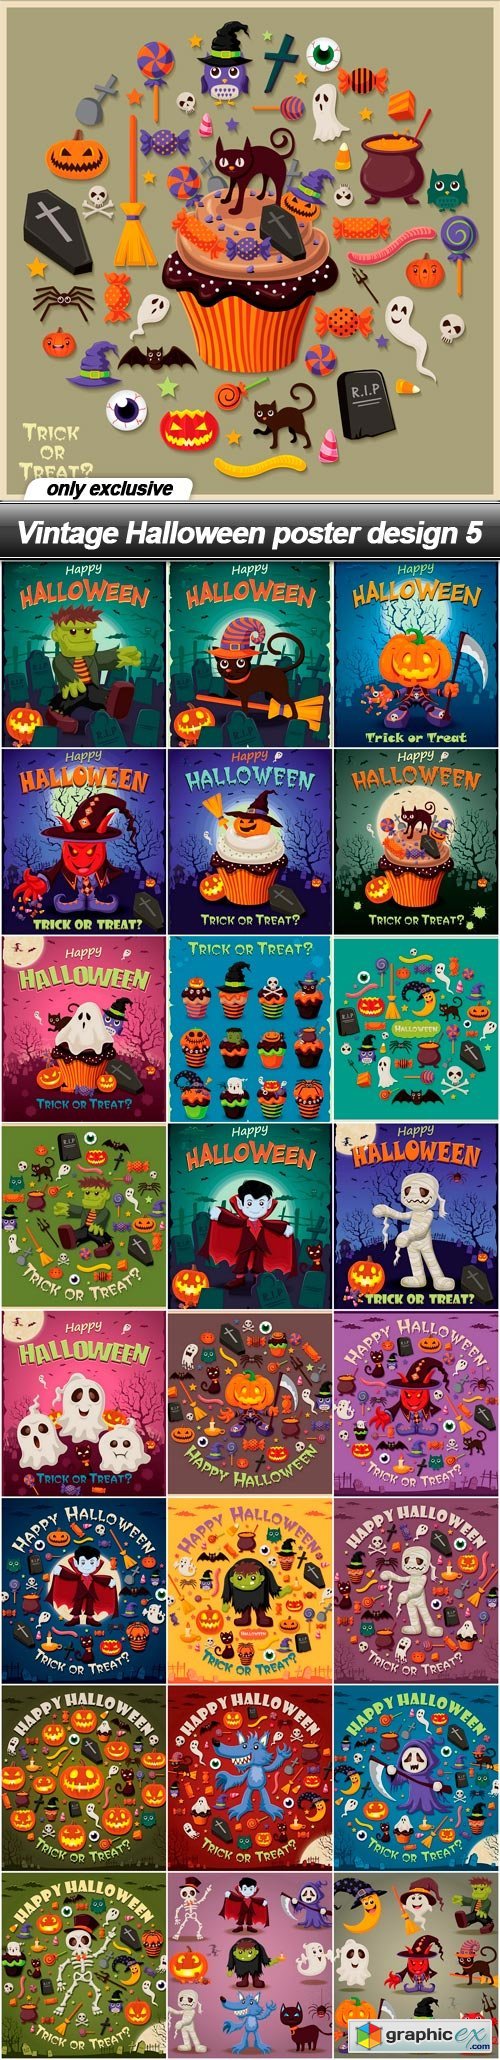 Vintage Halloween poster design 5 - 25 EPS